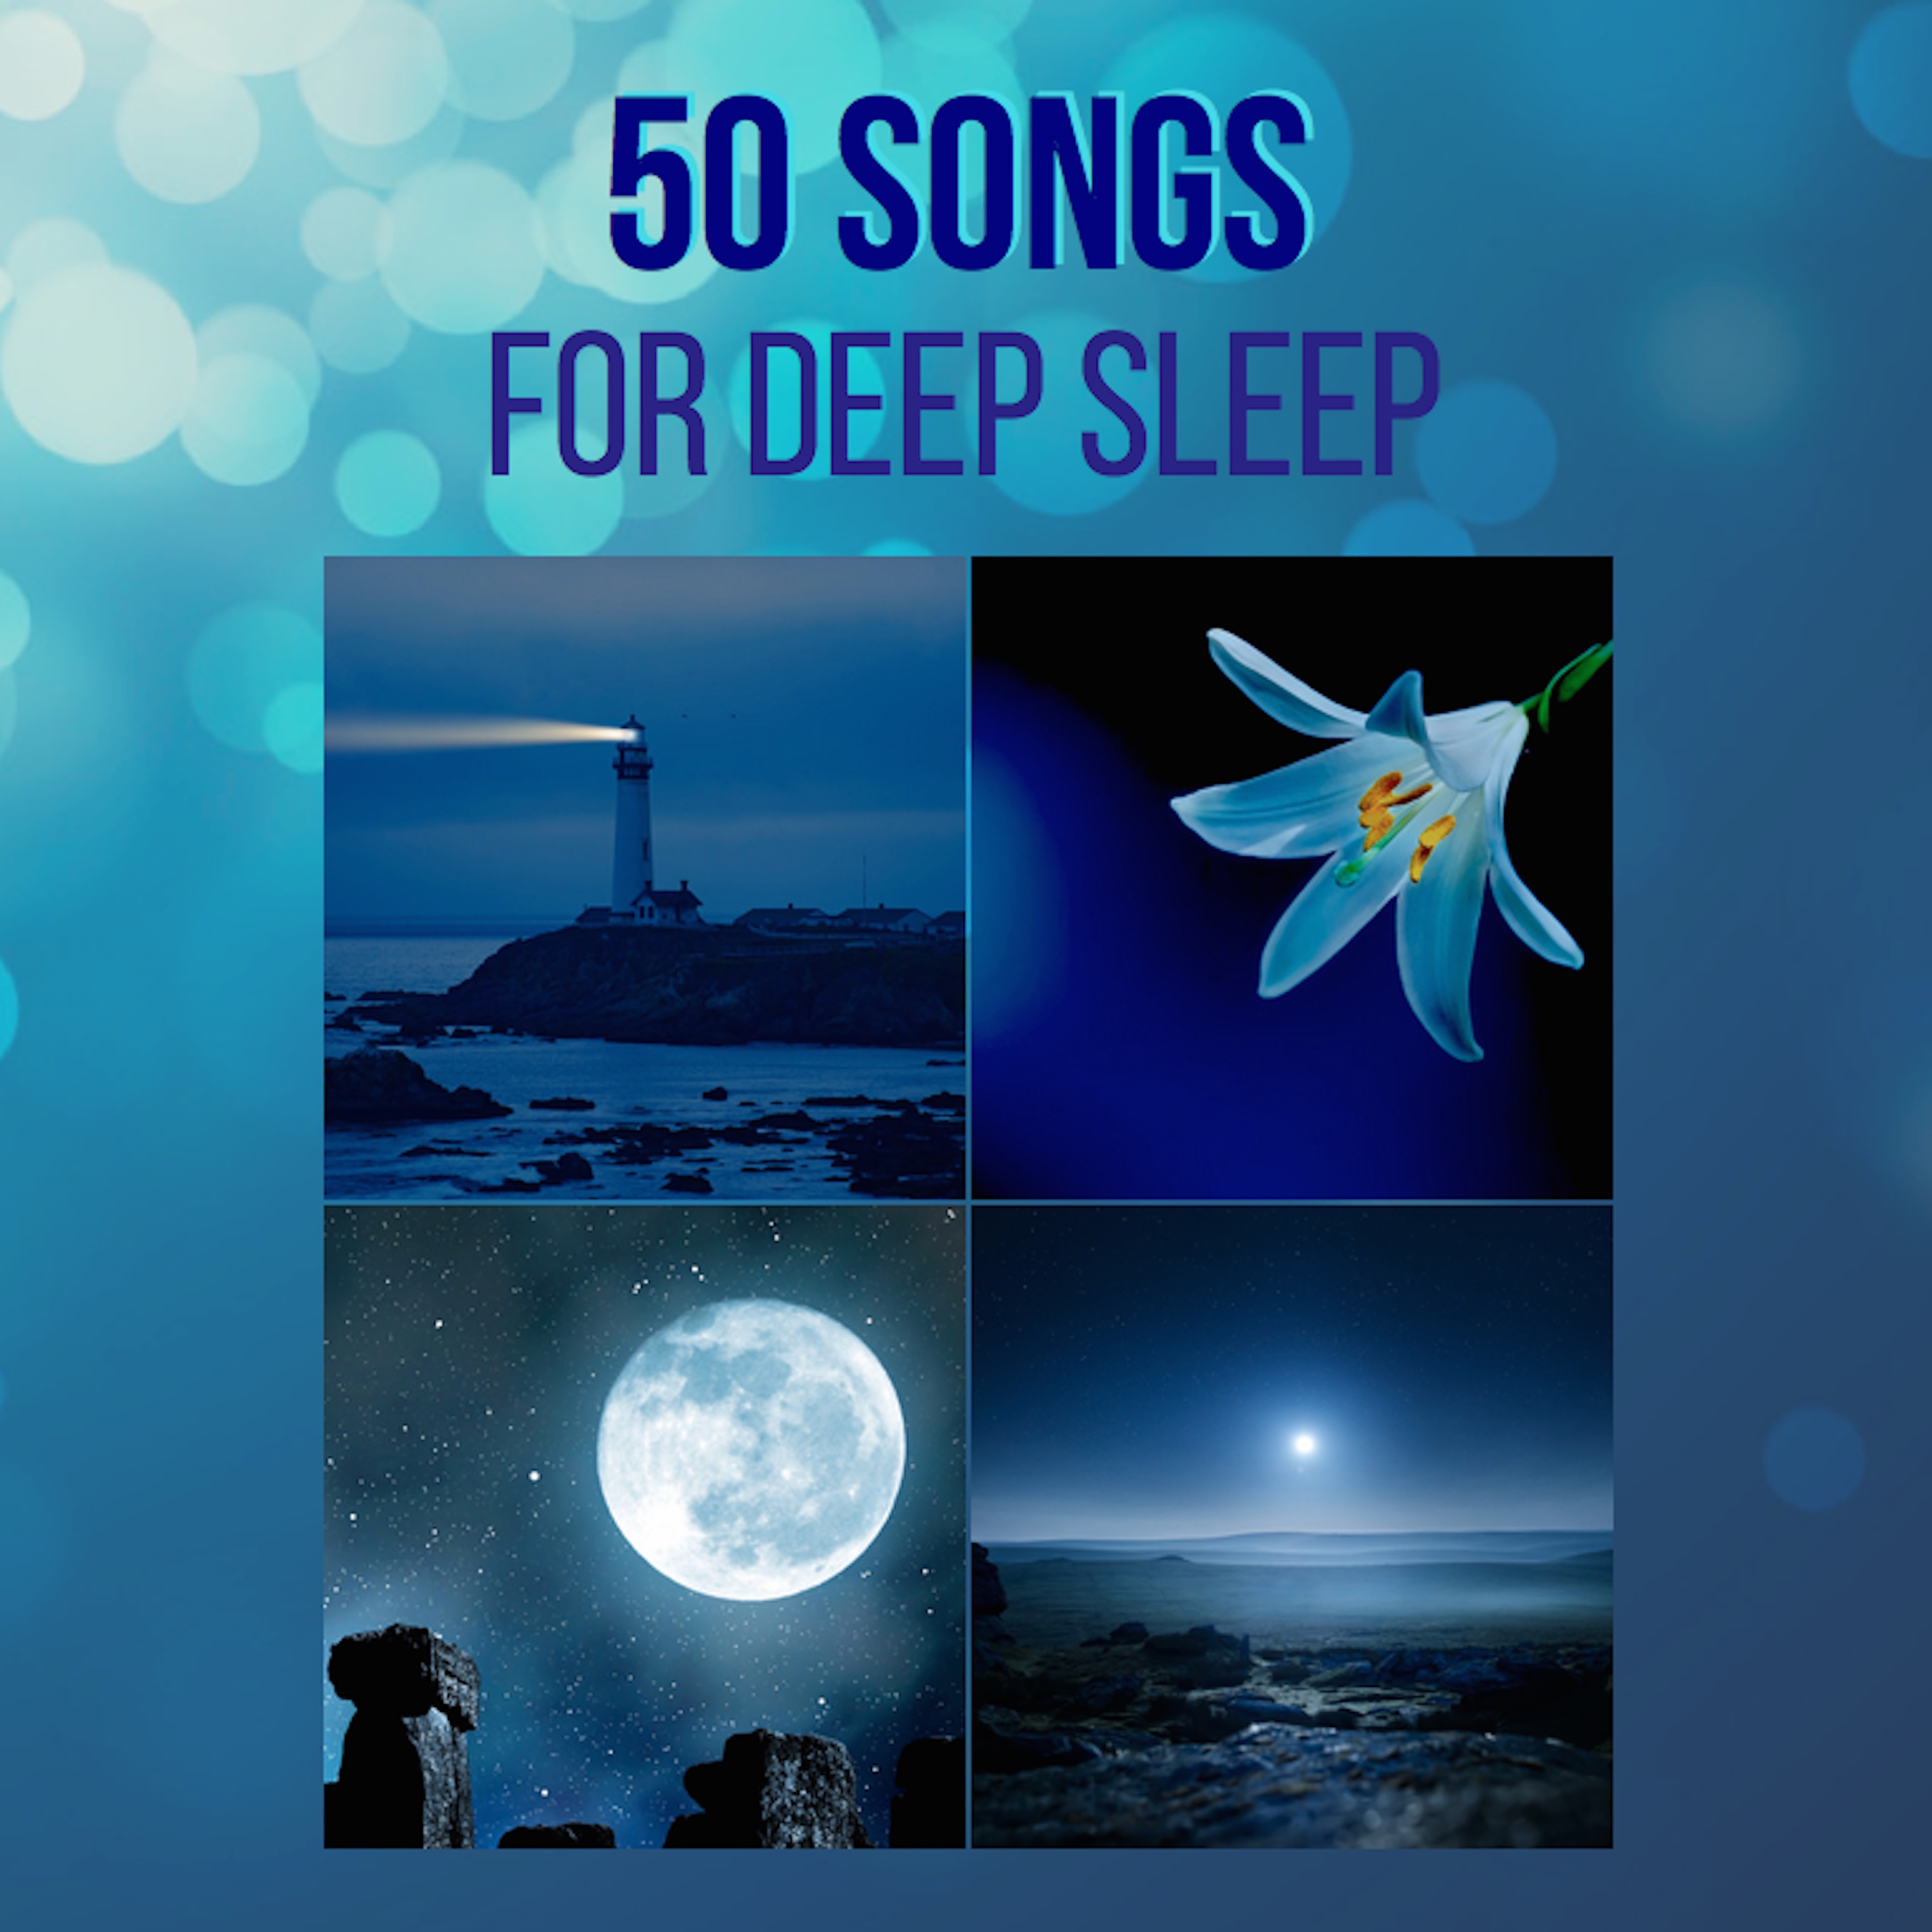 50 Songs for Deep Sleep – 50 Sleep Yoga Music to Put you to Sleep with Sleep Sounds of Nature